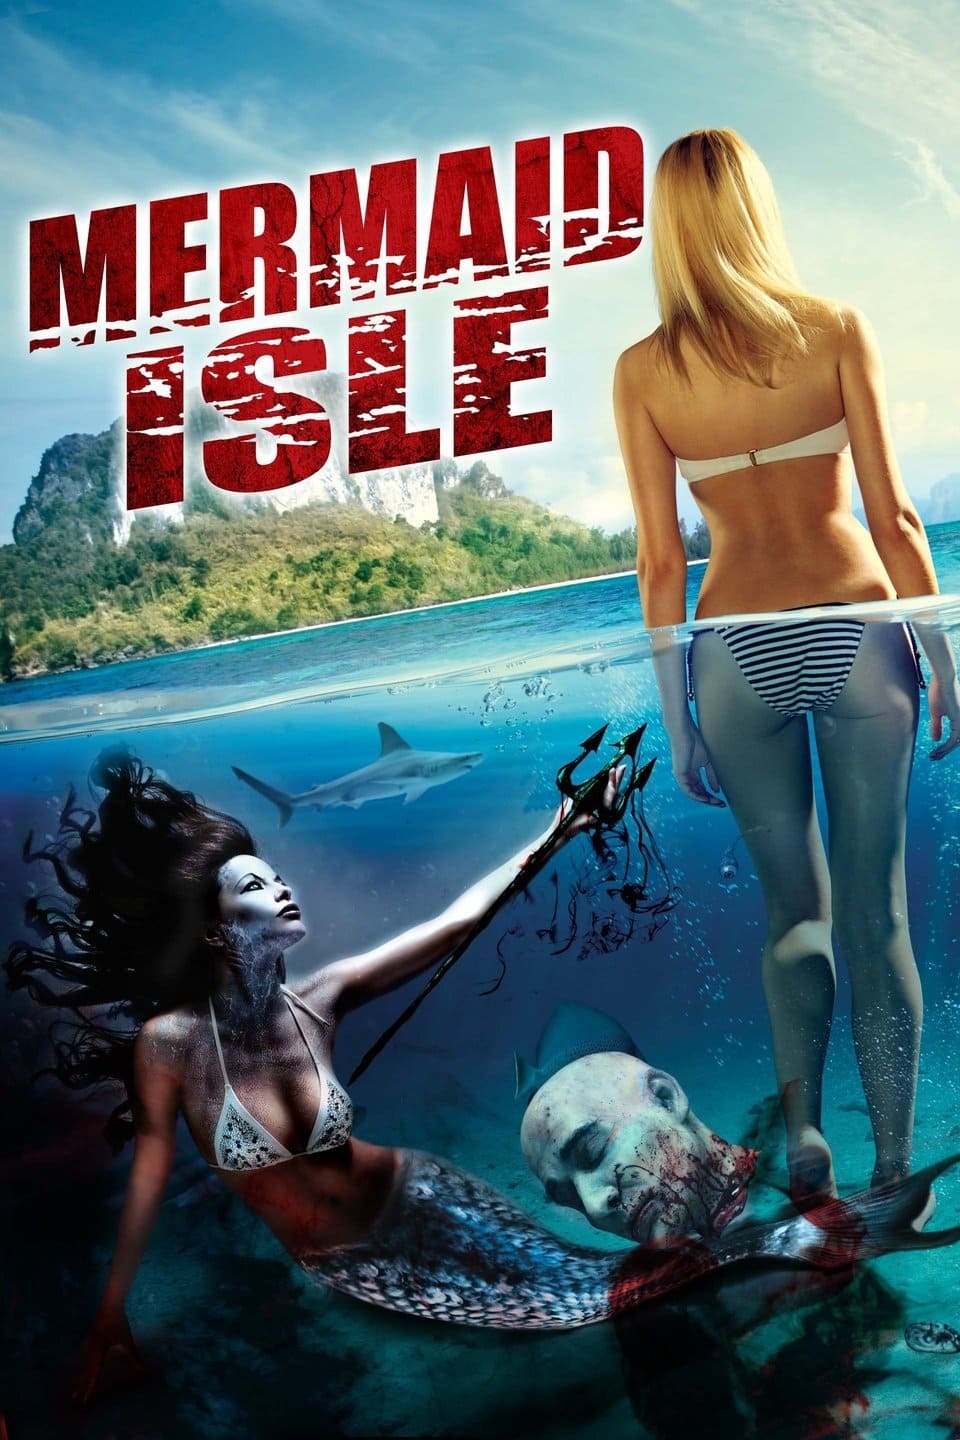 Mermaid Isle